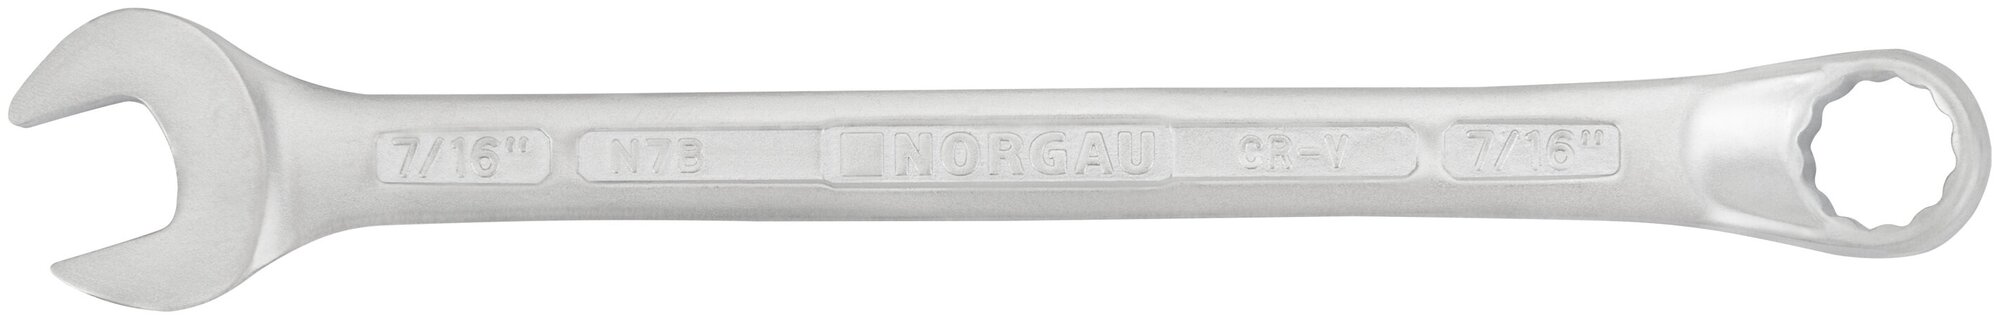 Ключ гаечный 7/16" NORGAU Industrial, "HРM" High precision machining 160 мм, рожковый и накидной профиль.